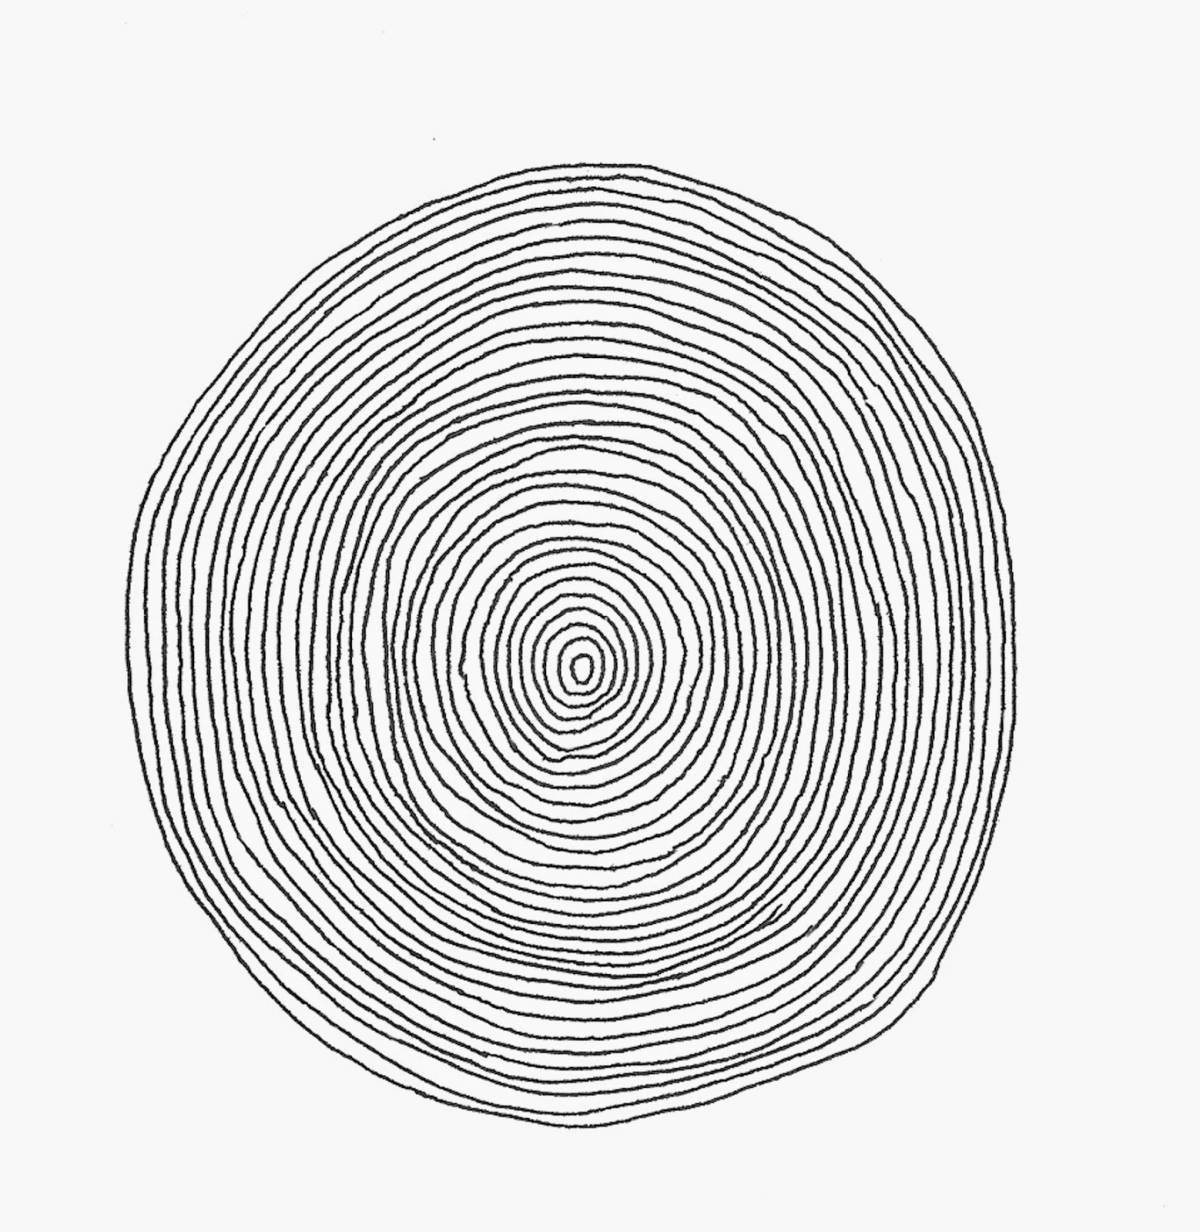 Create a unique spiral